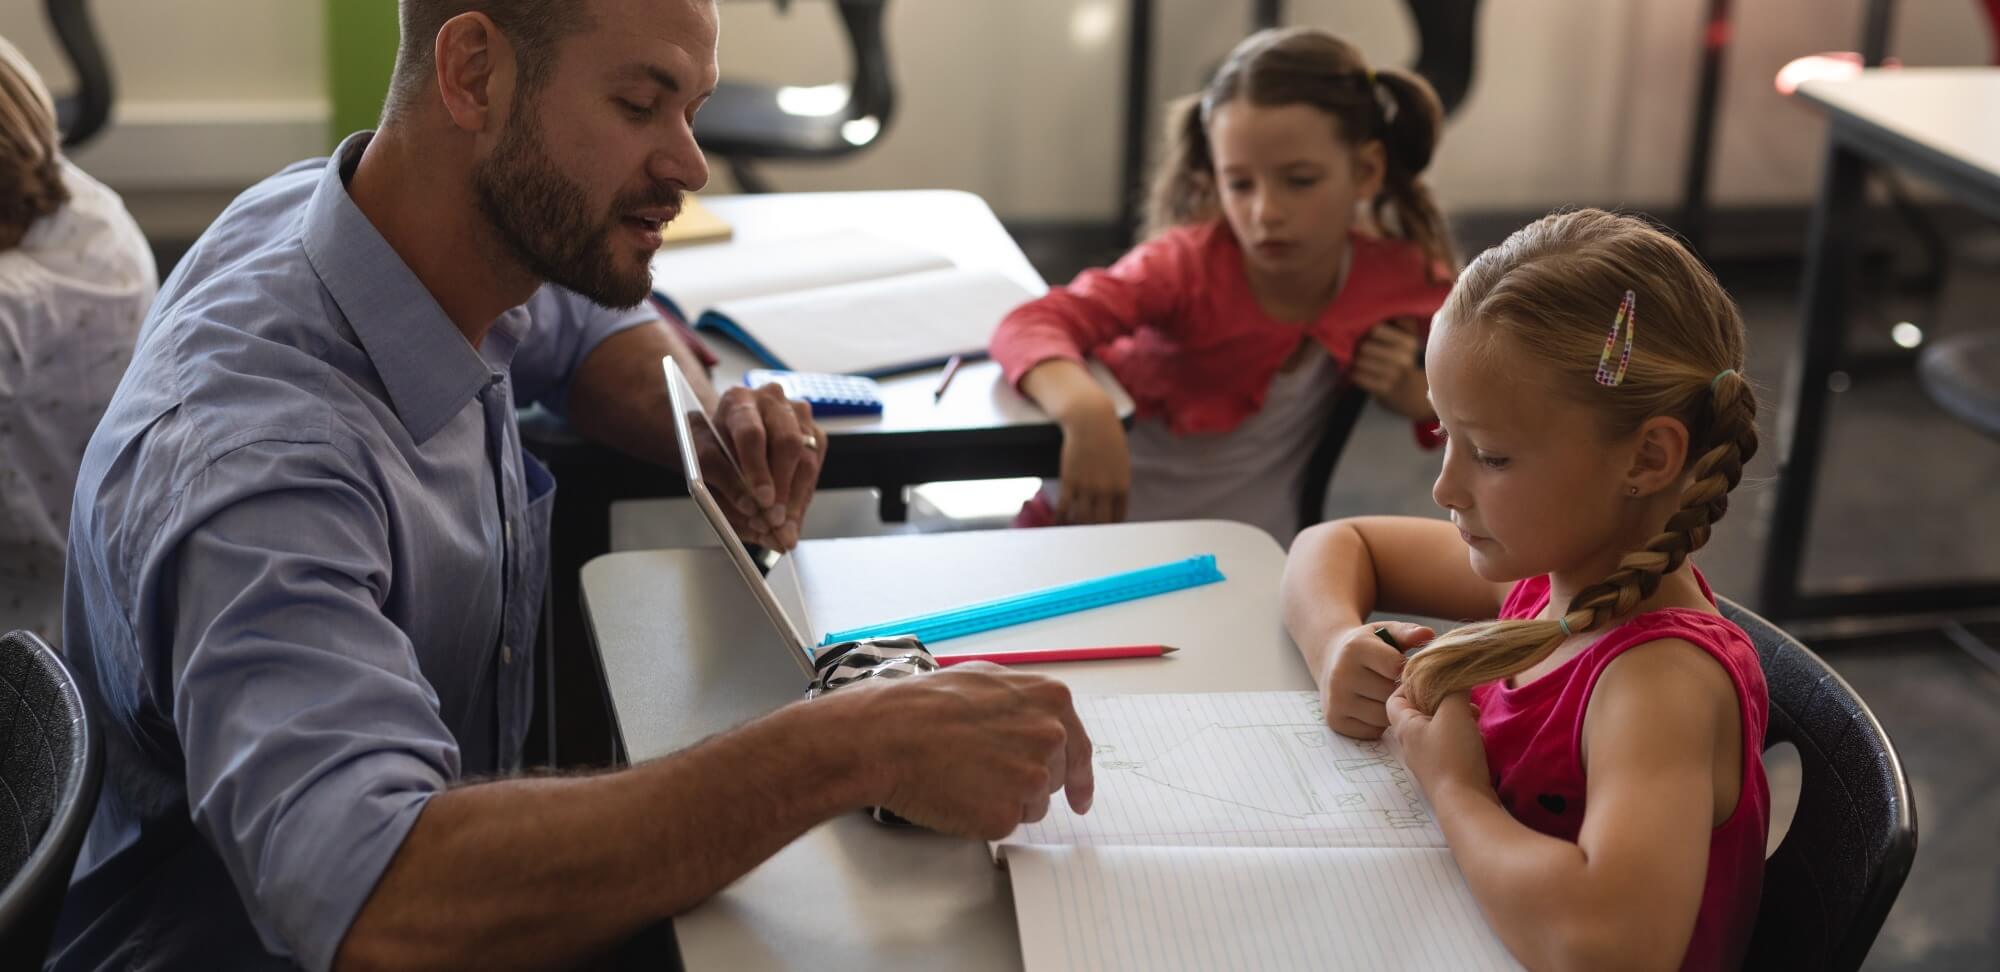 educação inovadora: imagem de uma professor ensinando uma aluna